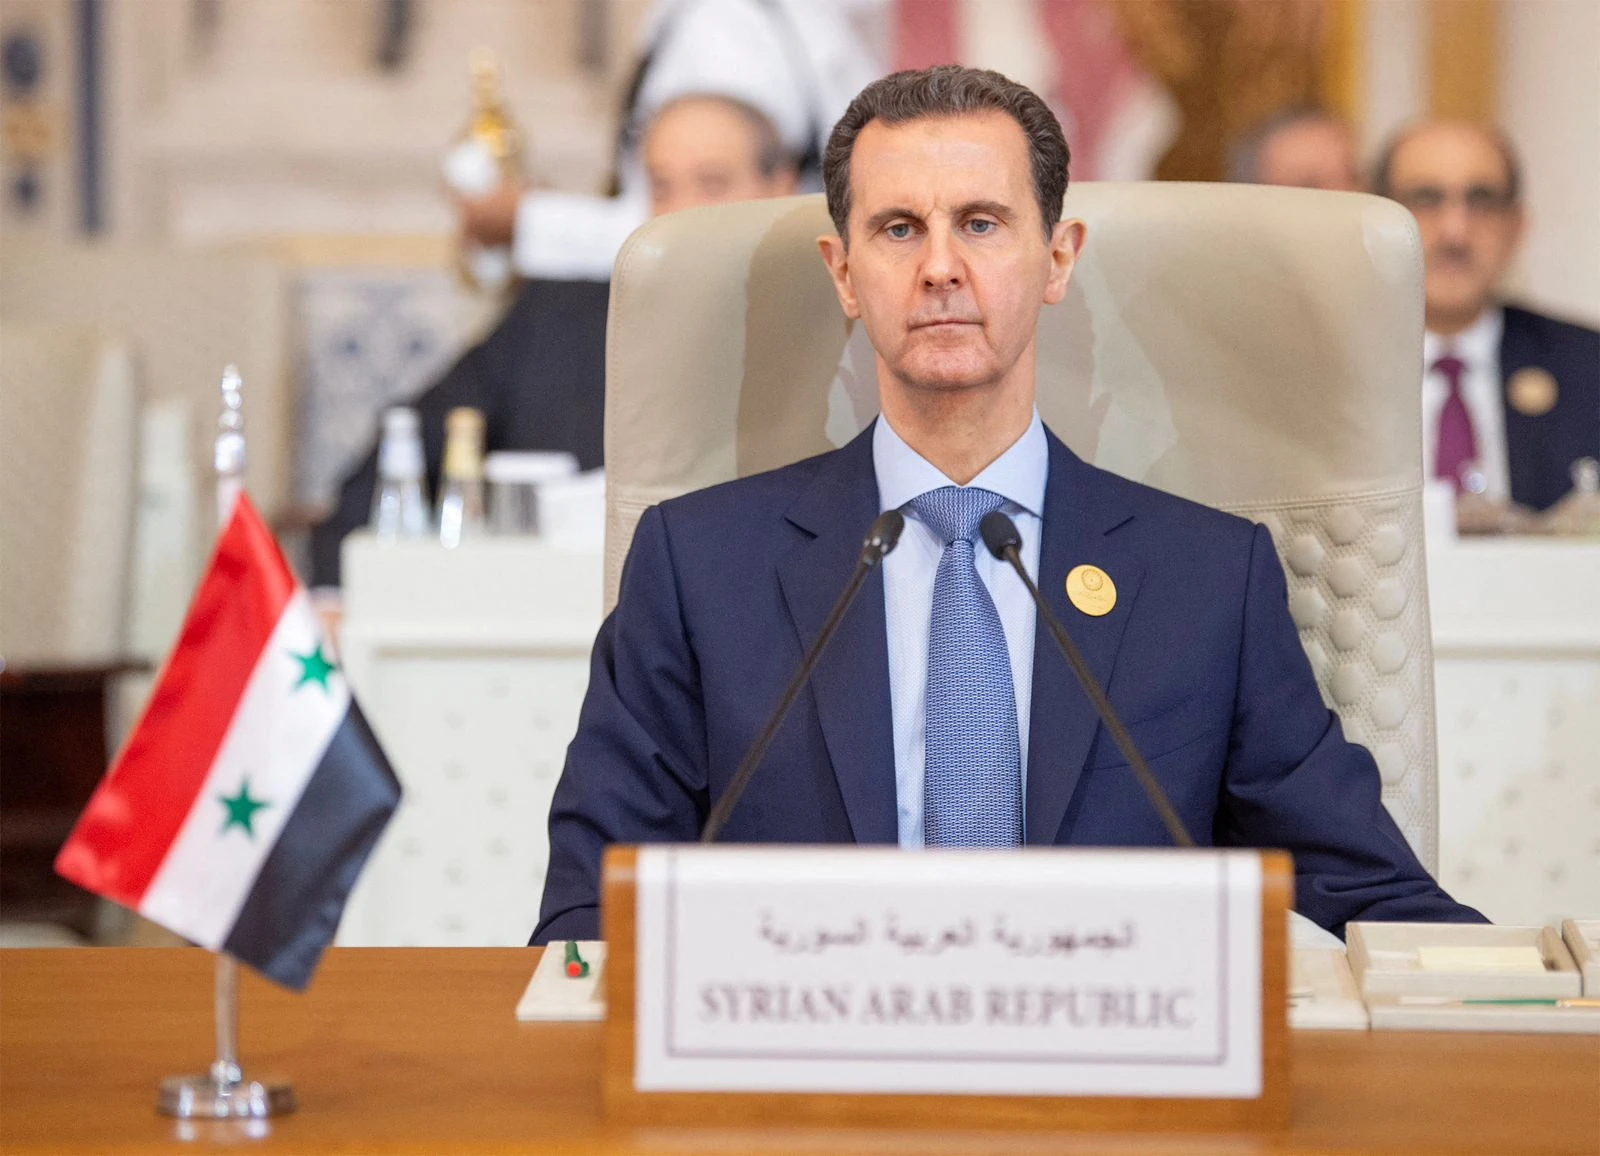 Rộ tin Pháp ban hành lệnh bắt giữ Tổng thống Assad của Syria - Ảnh 1.